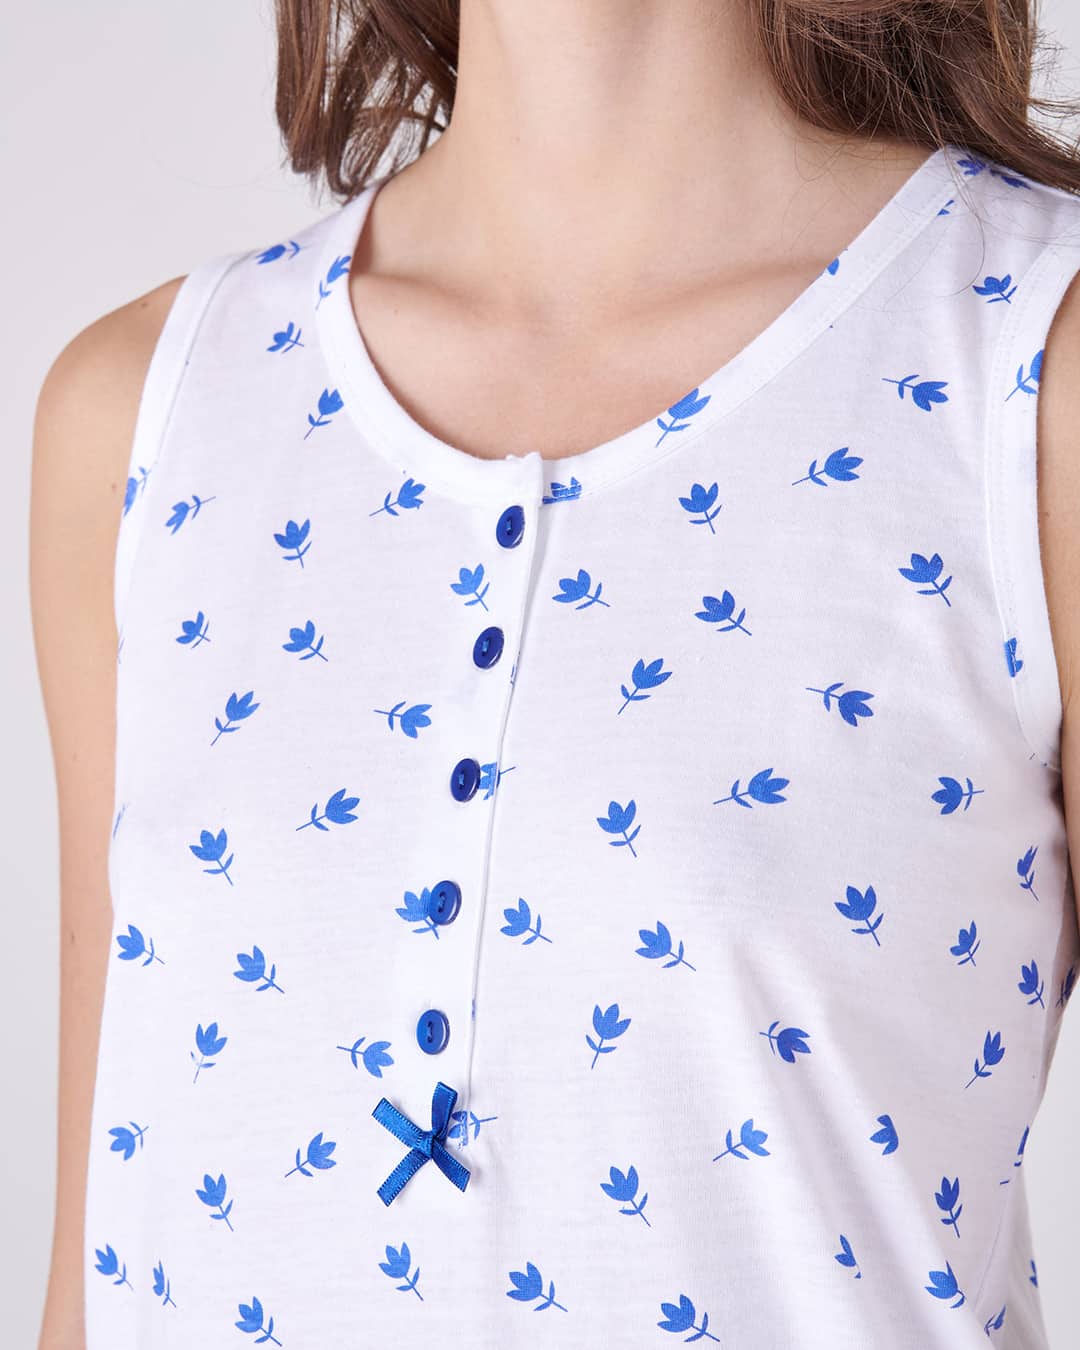 Dettaglio della canotta del pigiama con pinocchietto da donna a fiori blu